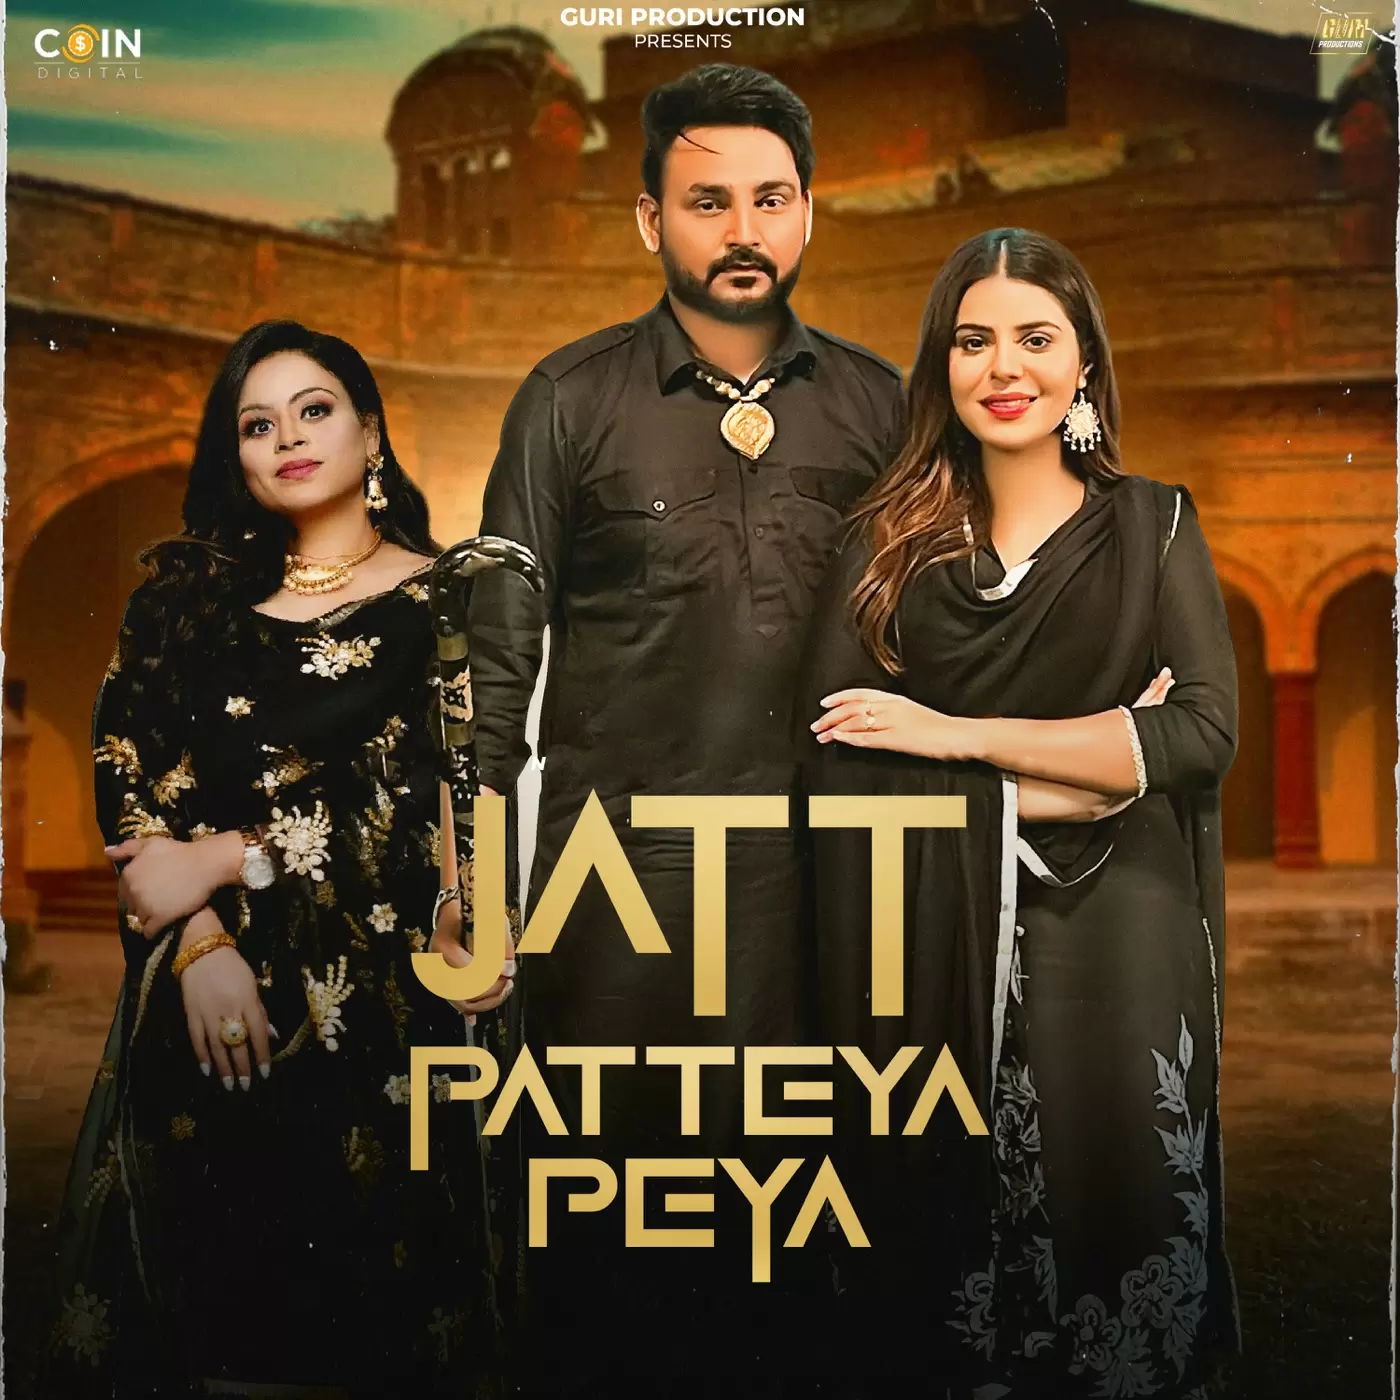 Jatt Patteya Peya - Single Song by Guri Sandhu - Mr-Punjab